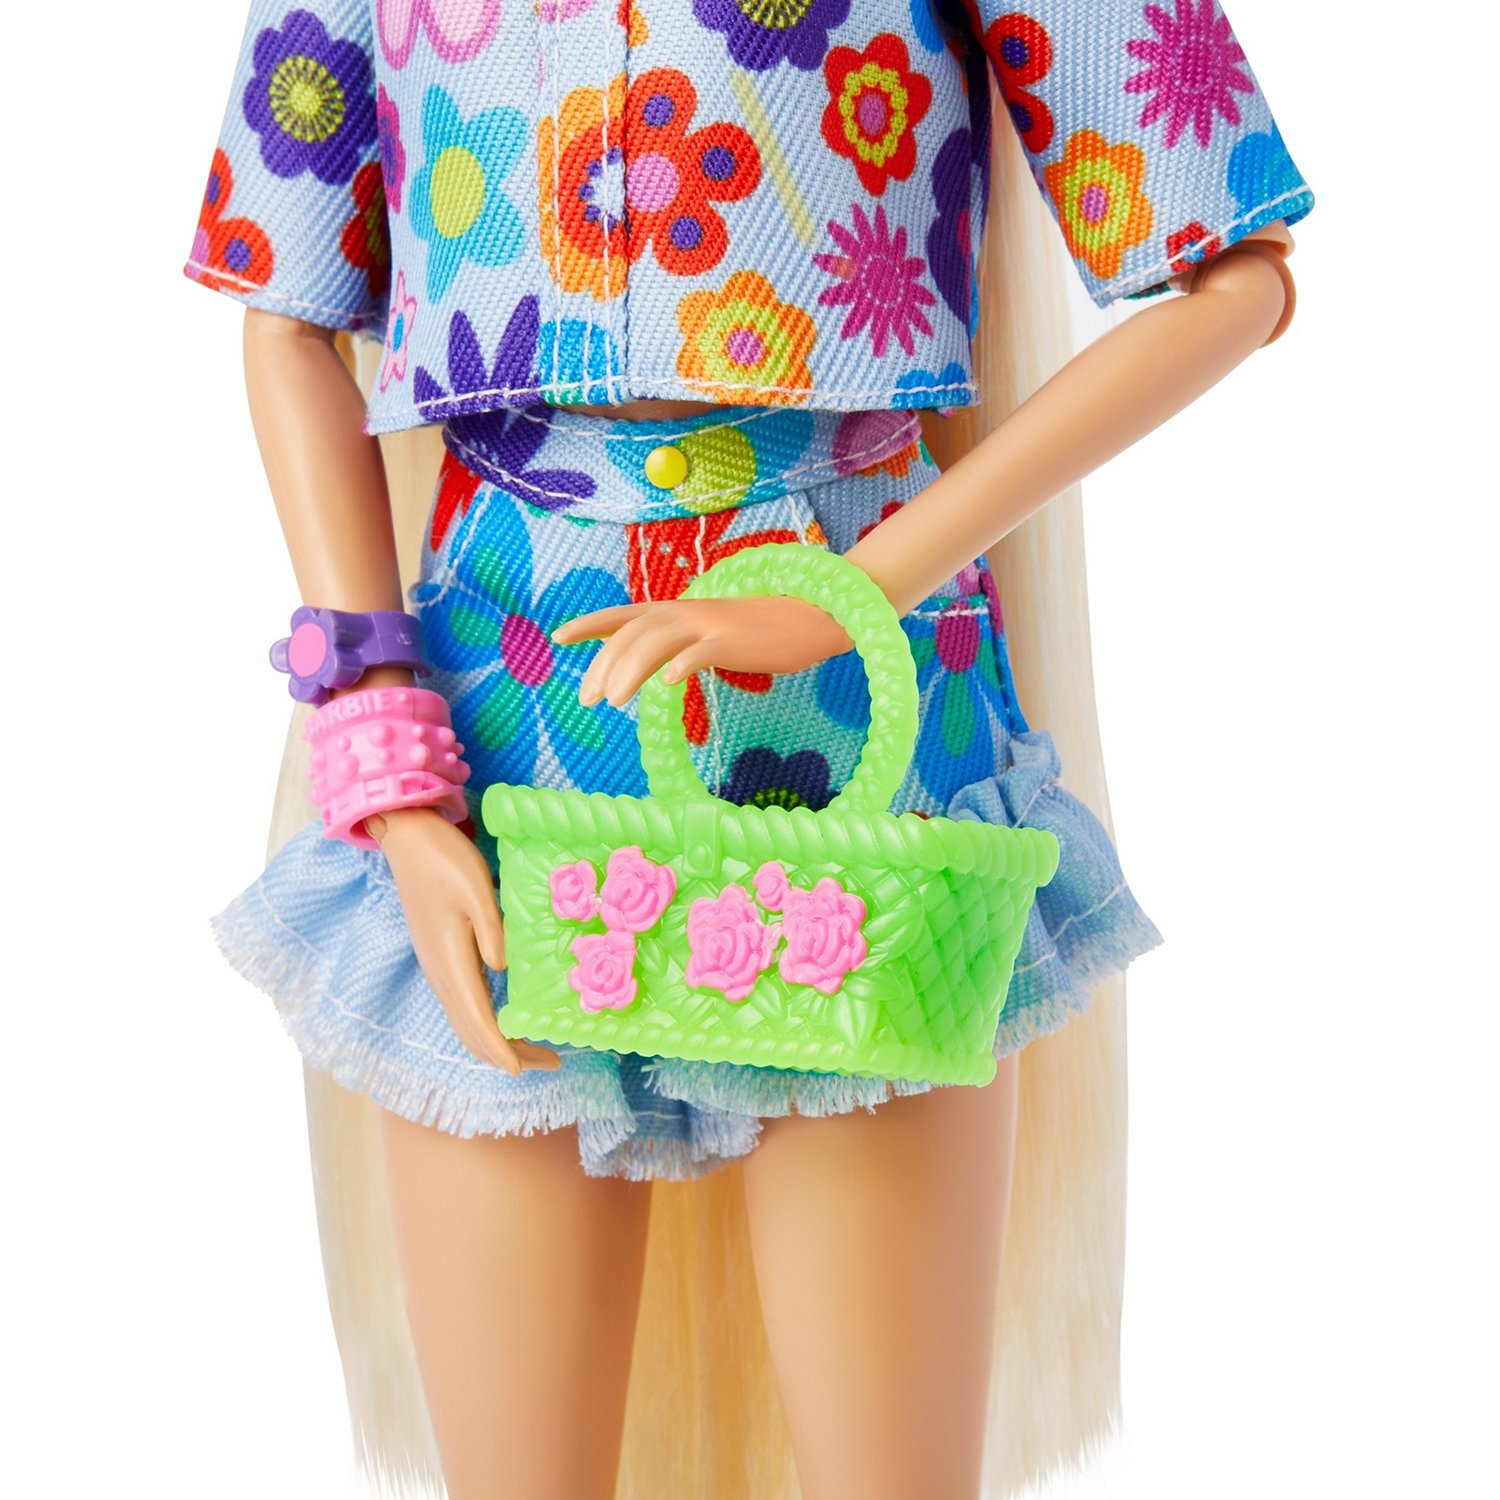 Кукла Barbie HDJ45 Экстра в одежде с цветочным принтом